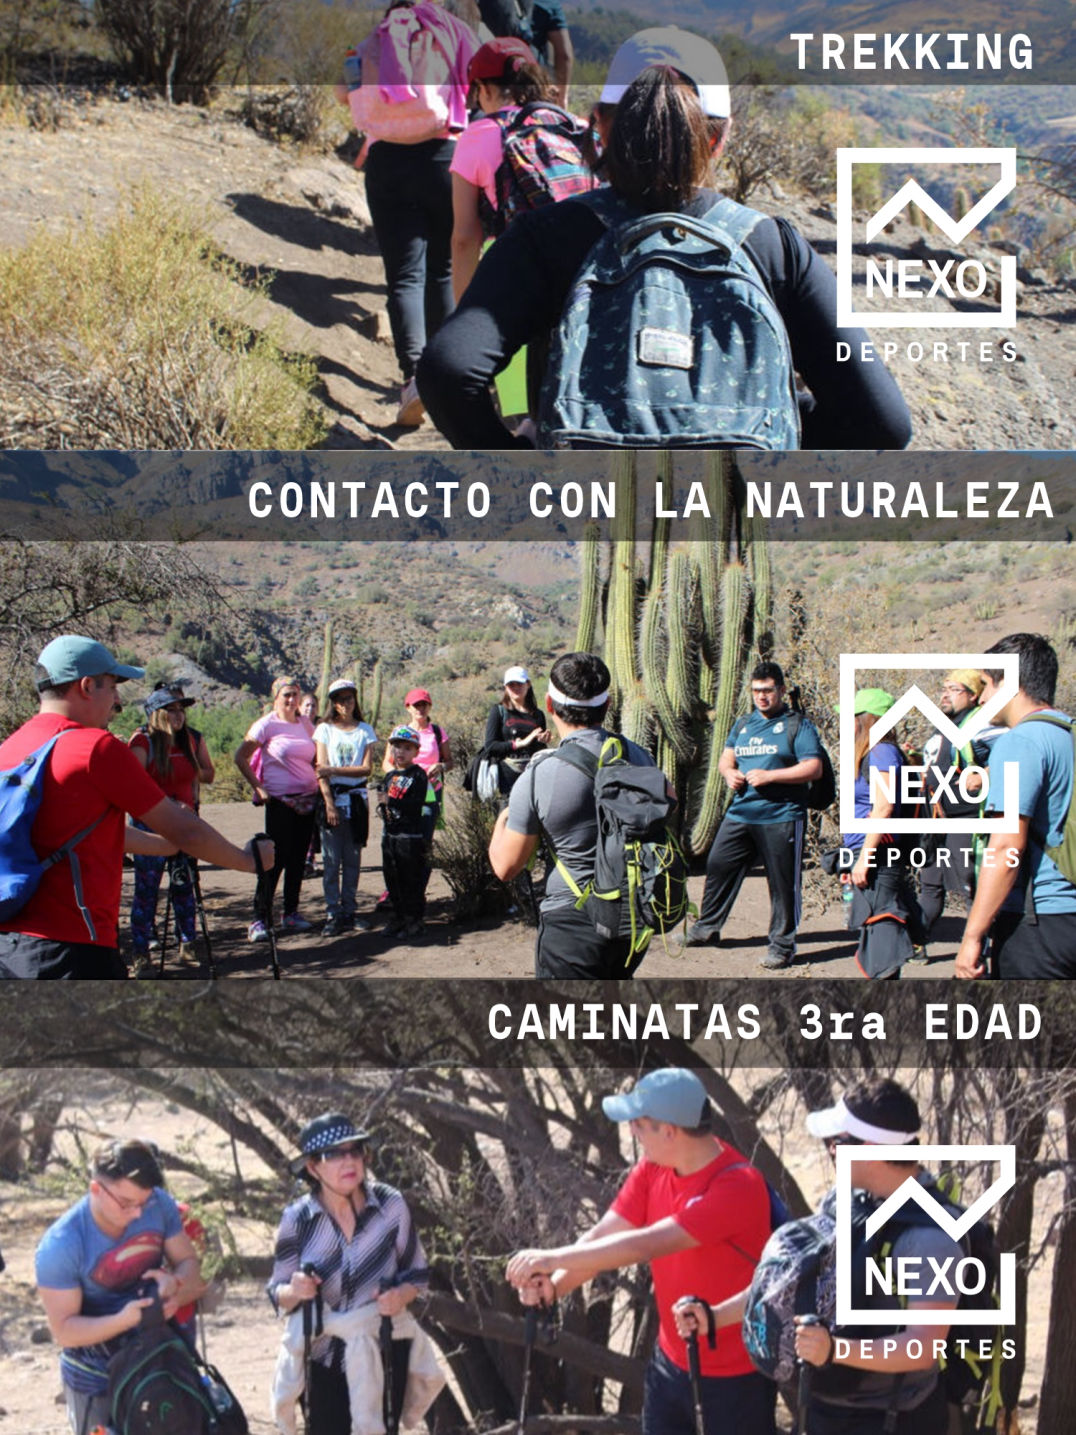 Nexo Deportes - Servicios Deportivos - Trekking - Caminatas de la tercera edad - deportes aventuras